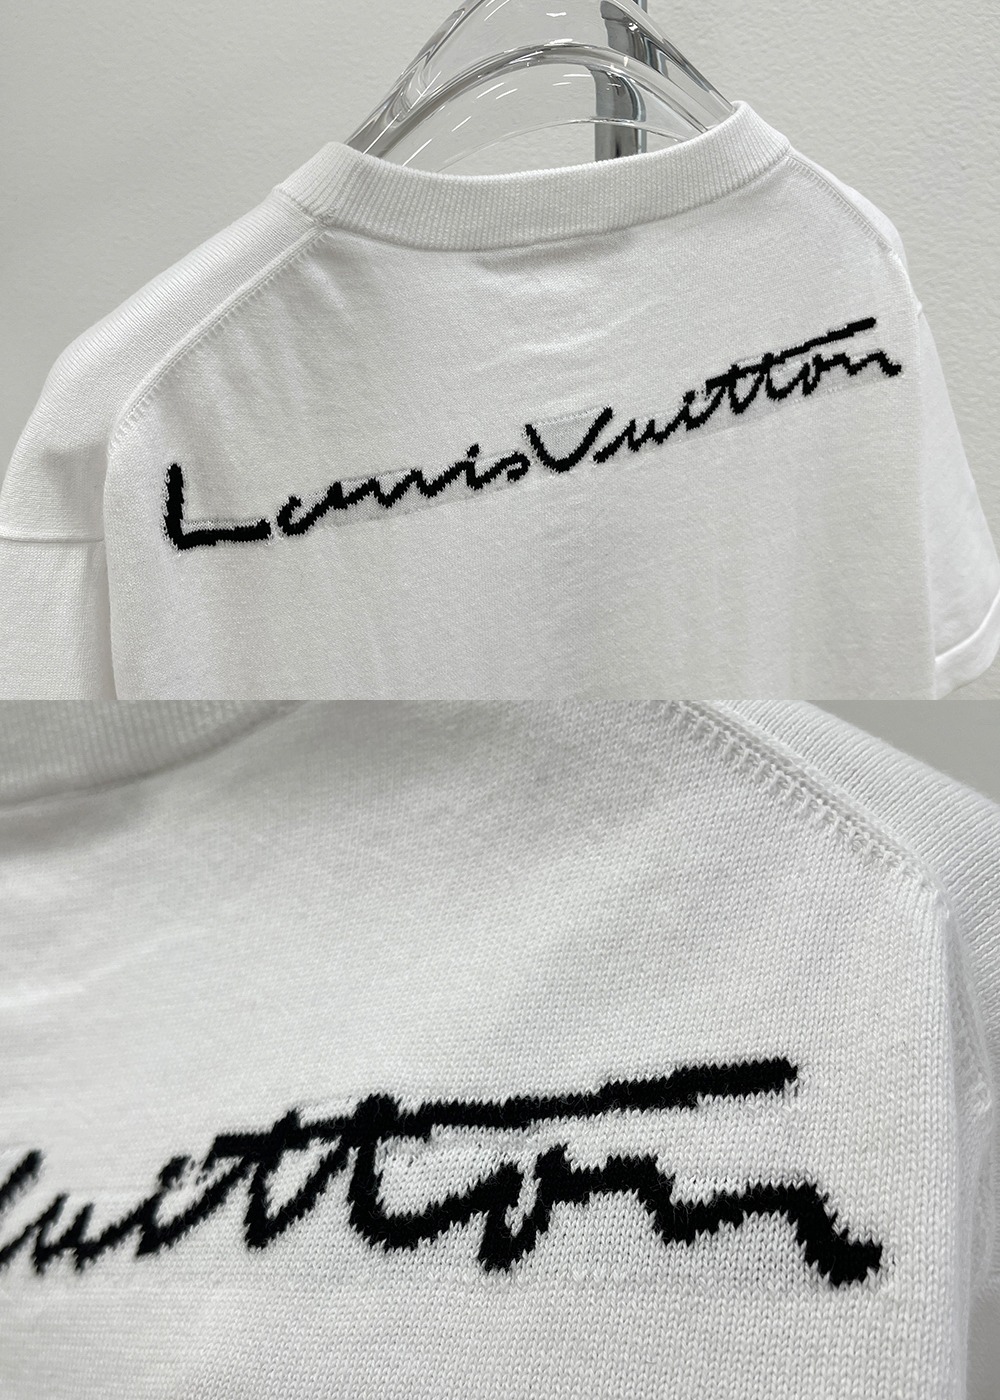 Louis Vuitton Knit Graphic Blue T Shirt – Crepslocker